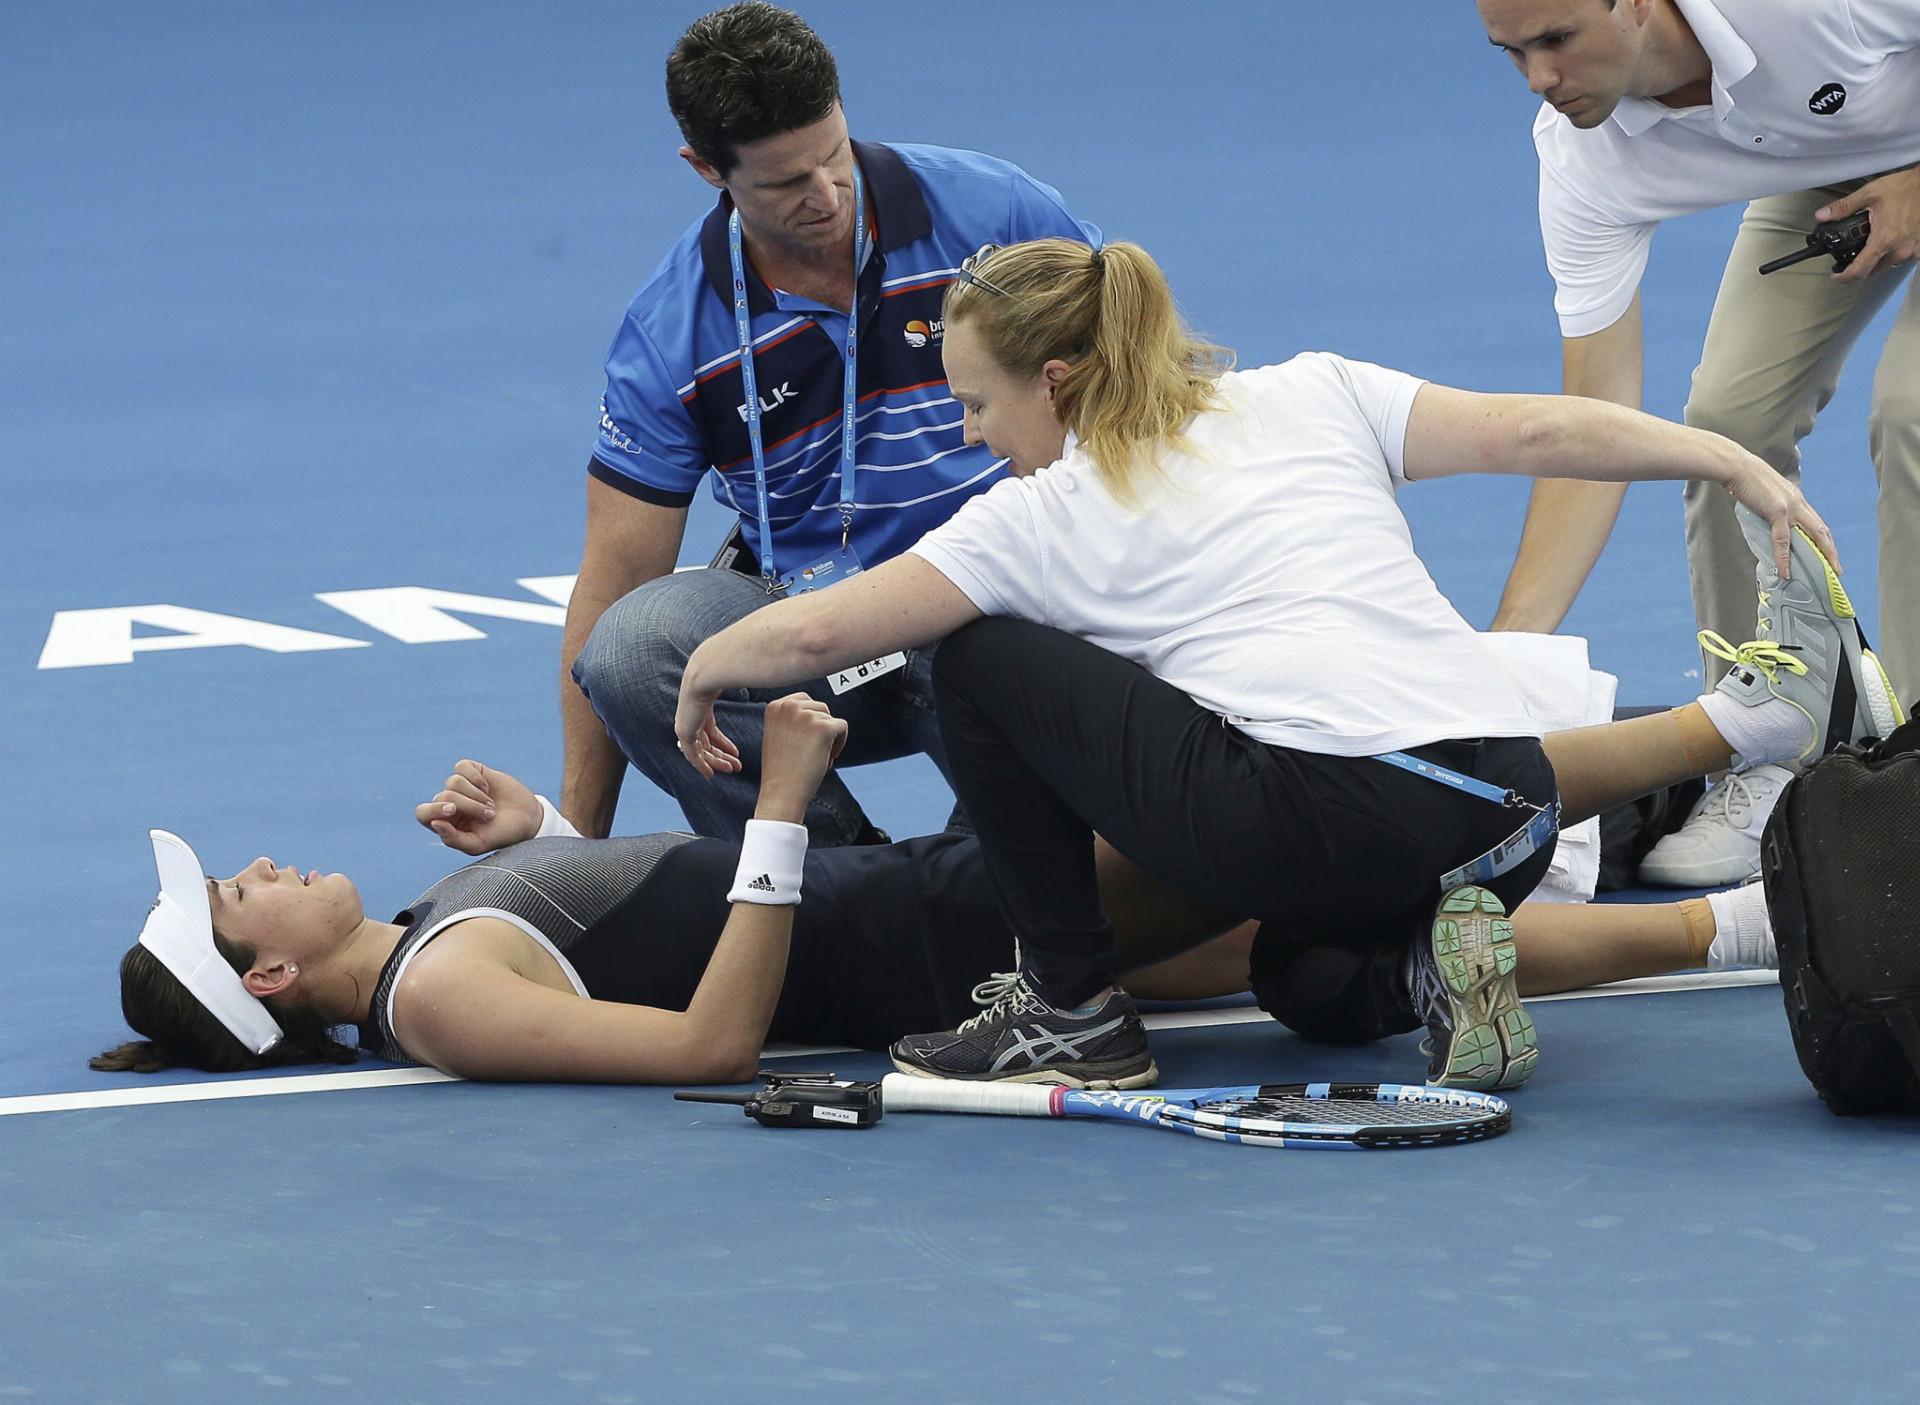 Ukončenie zápasu pre zdravotné problémy bývalo častým javom najmä na finančne lukratívnych grandslamových turnajoch (na snímke Španielka Gabine Muguruzová na
nedávnom podujatí v Brisbane).